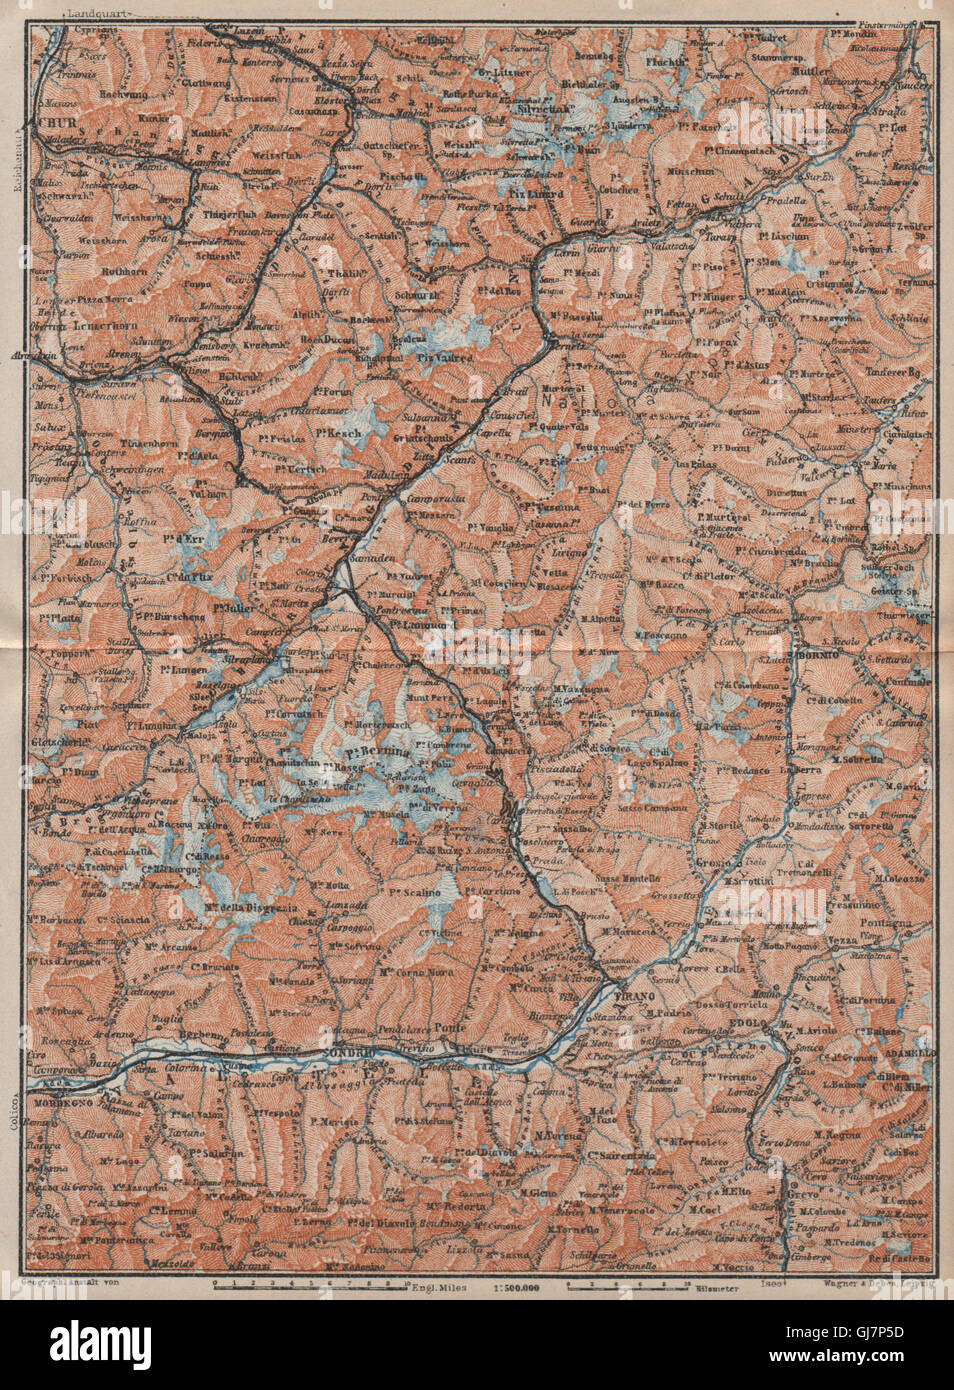 ENGADINE/VAL TELLINA. Davos Arosa Sils Bormio Livigno Sondrio Chur, 1922 map Stock Photo